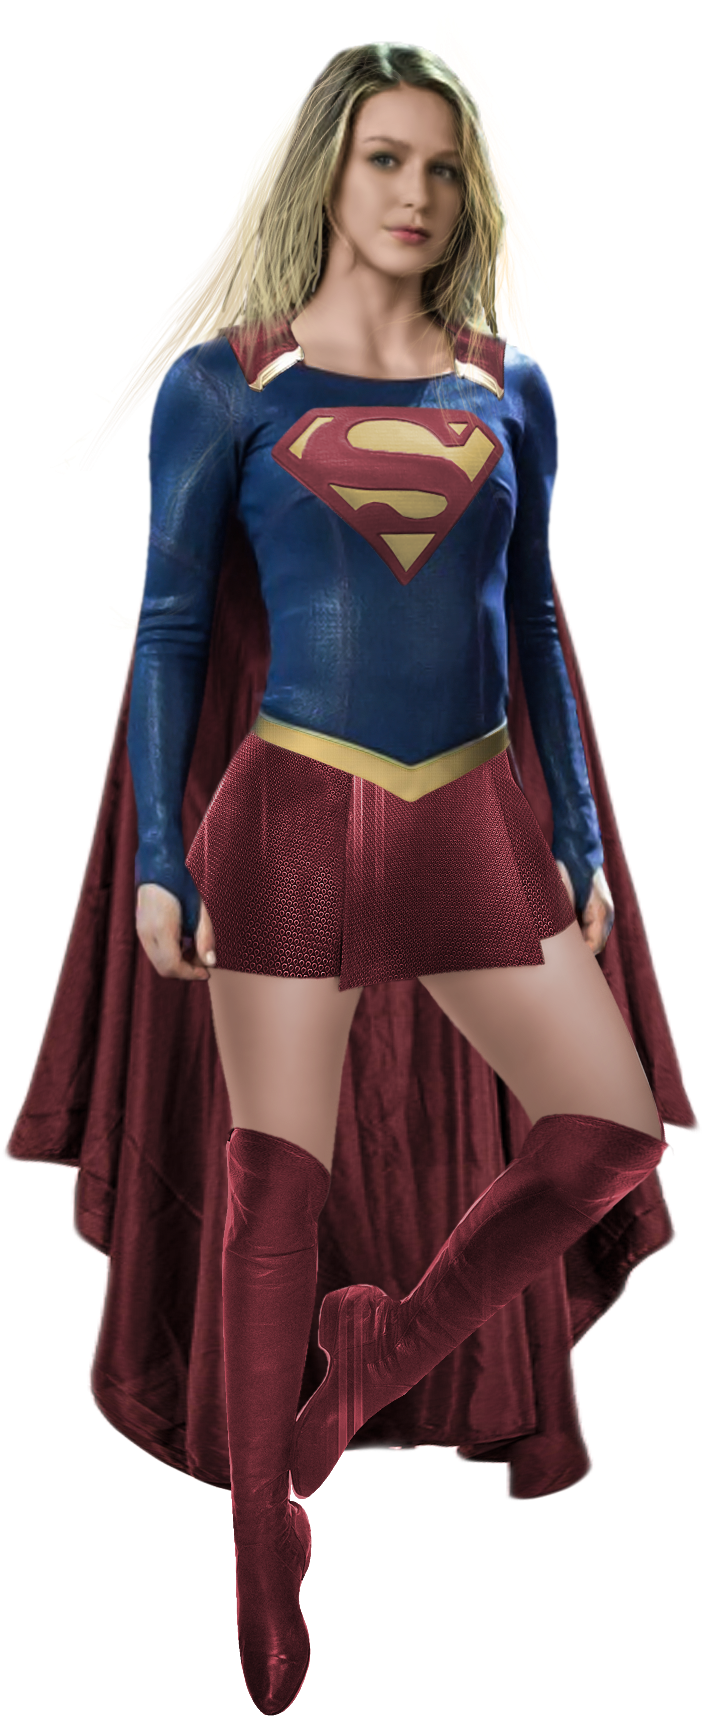 Supergirl Pose Costume